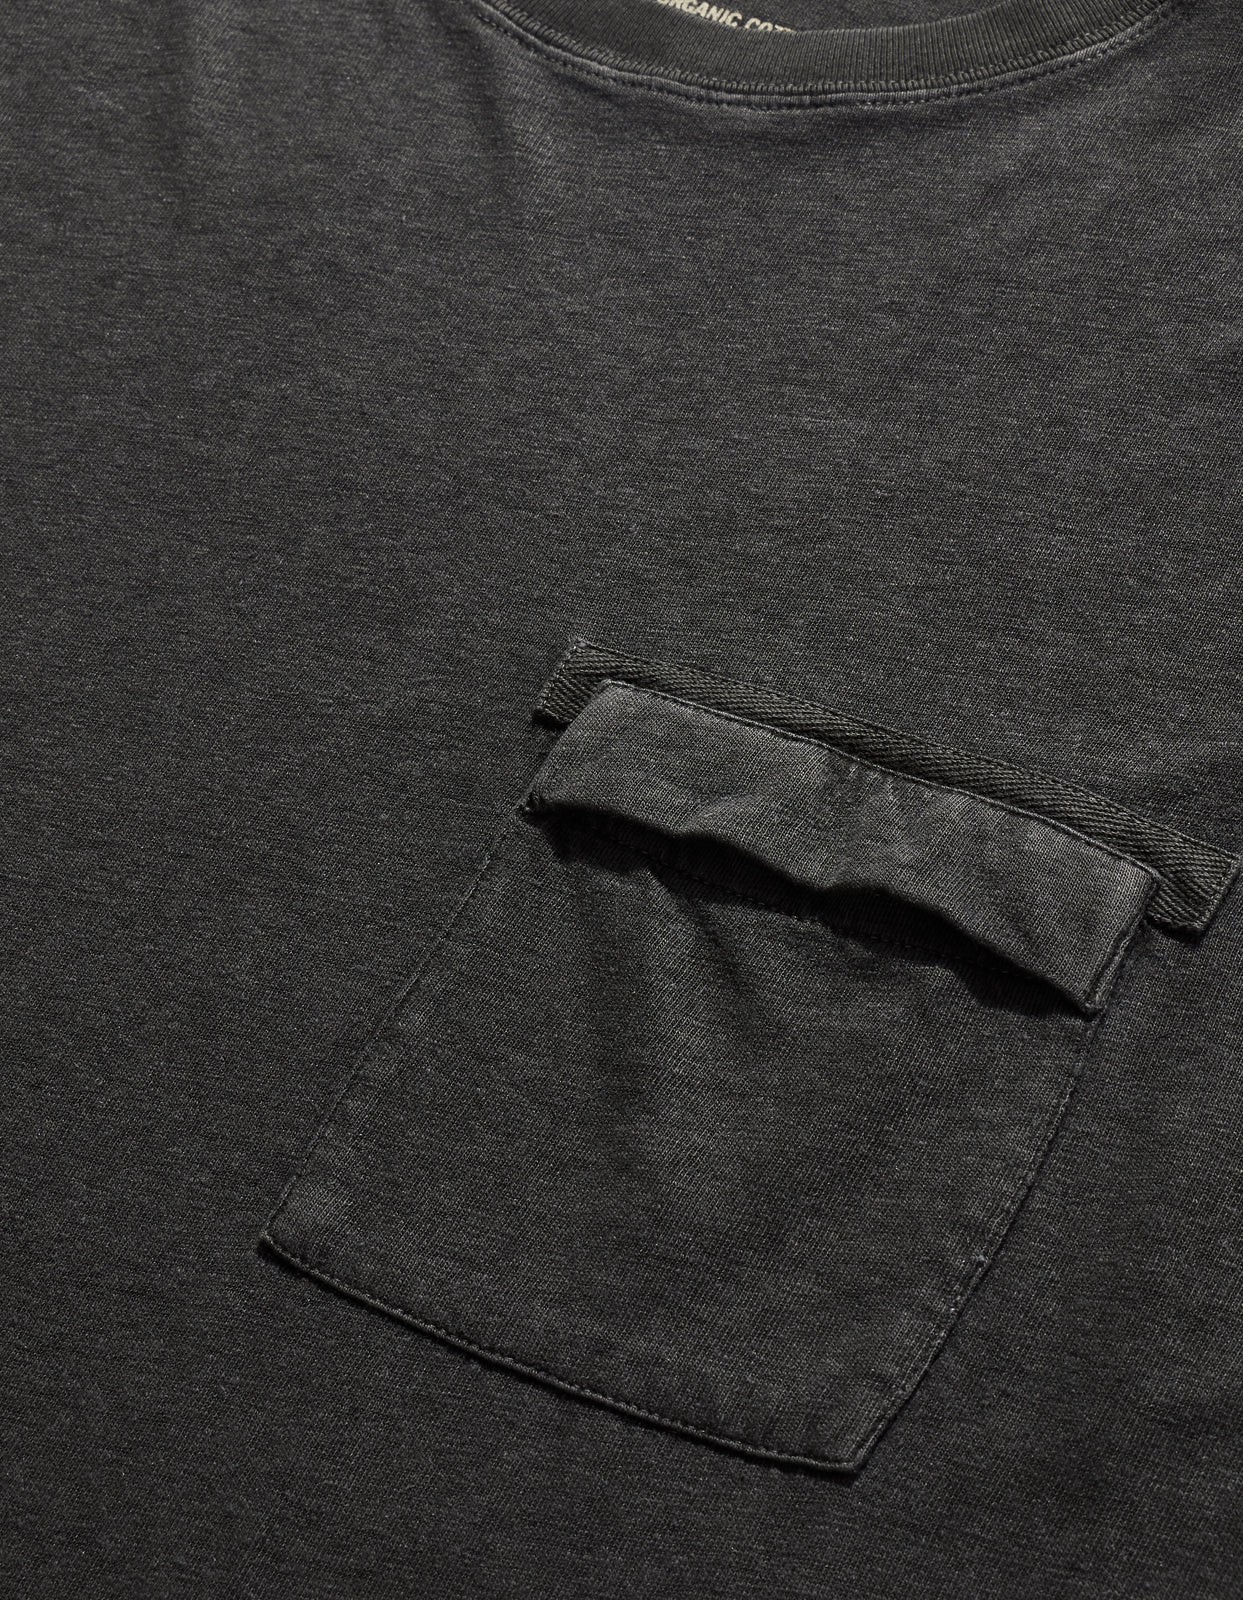 7021 Hemp Organic Pocket T-Shirt Black